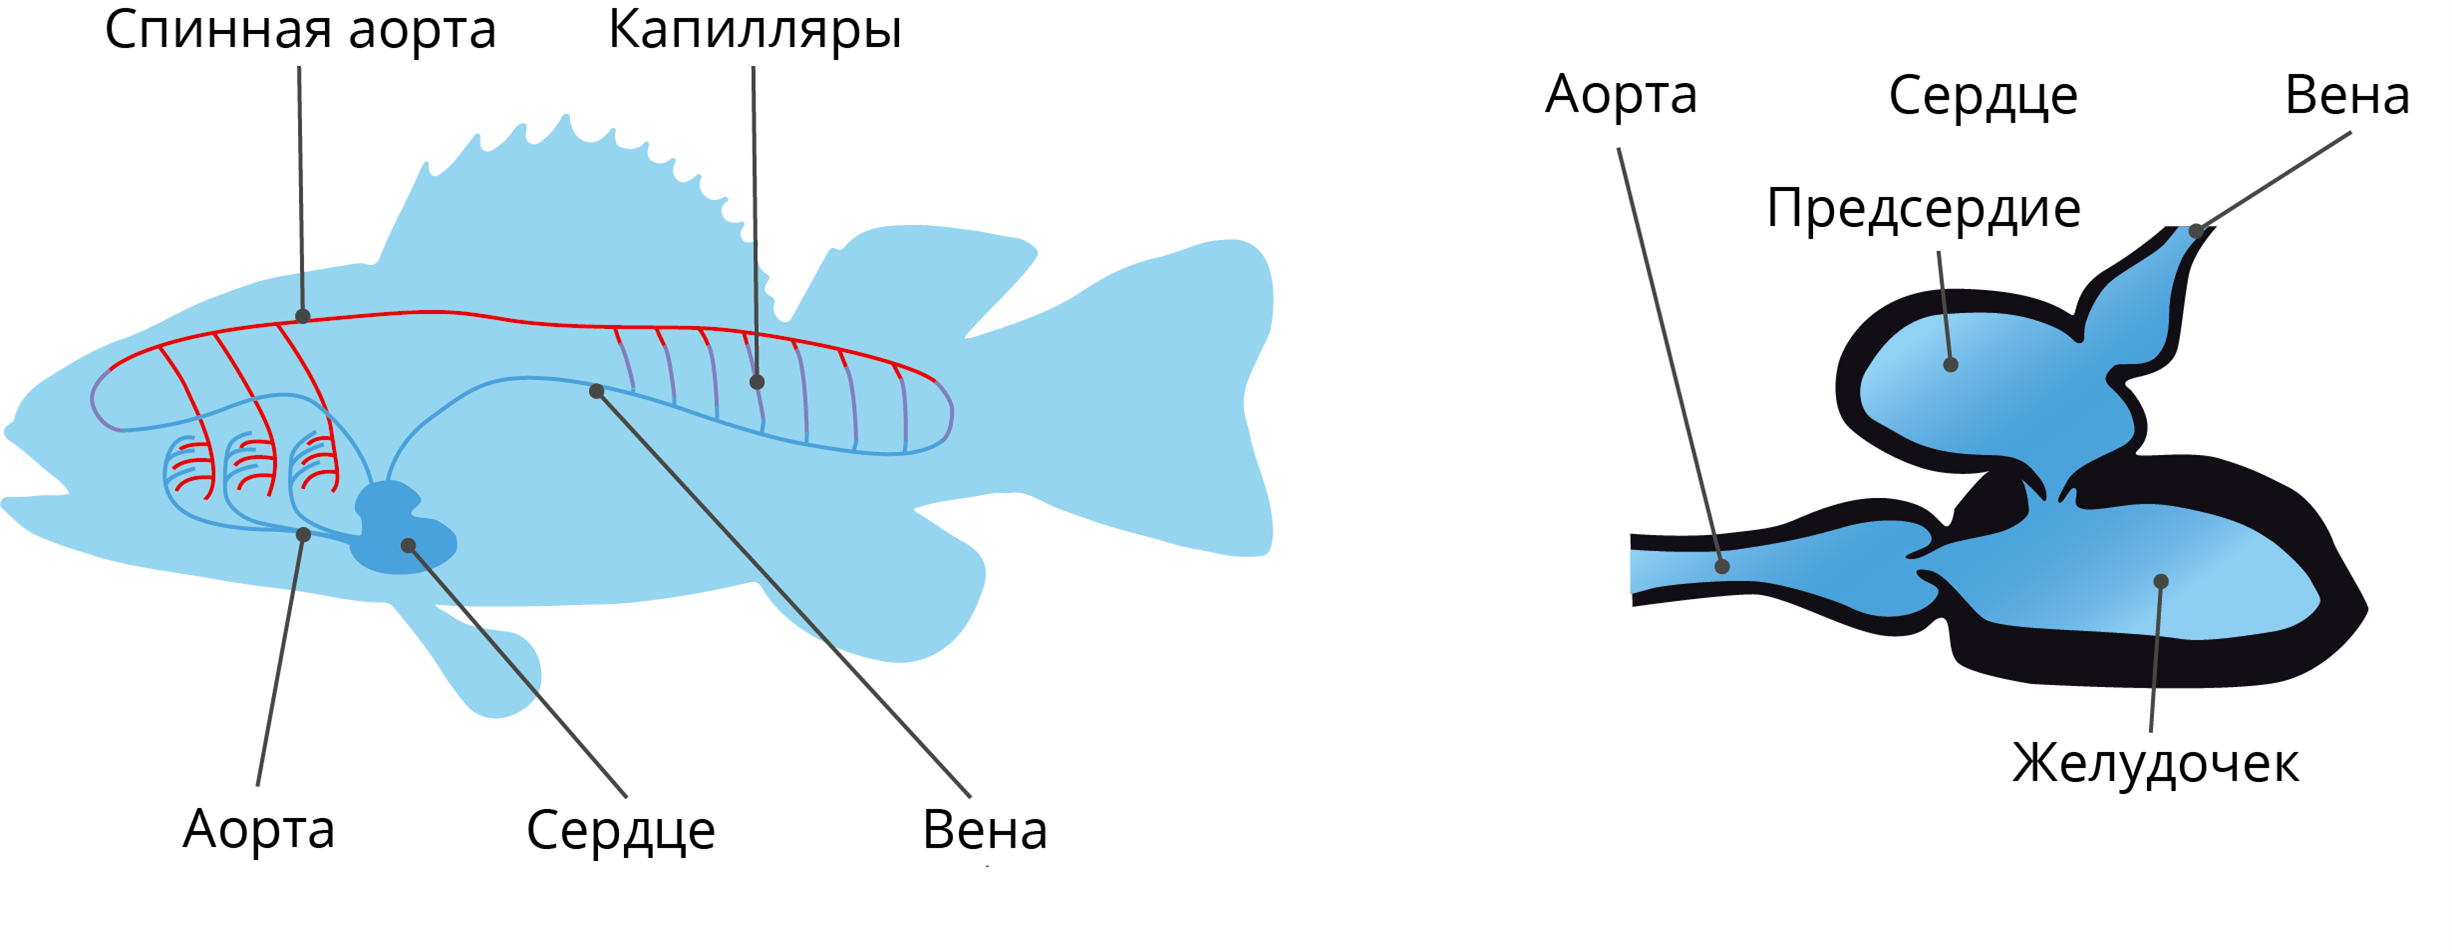 Сердце рыб состоит из камер. Кровеносная система рыб схема. Кровеносная система костистых рыб. Схема строения кровеносной системы рыб. Предсердие кровеносная система рыб.